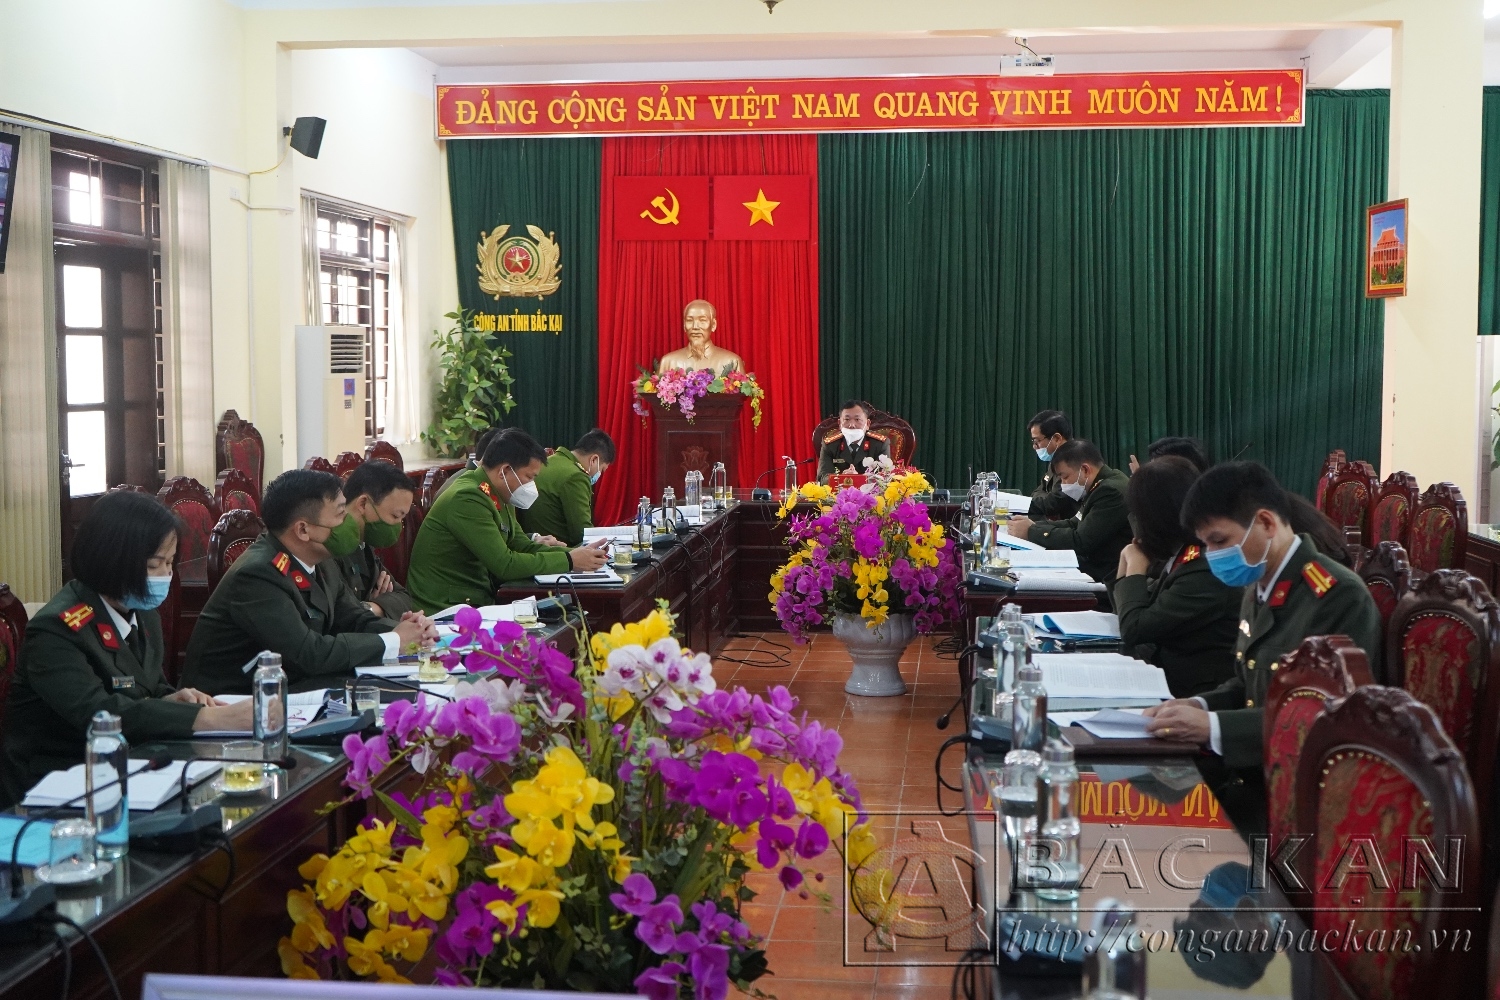 Đại tá Đinh Quang Huy, Phó Giám đốc Công an tỉnh chủ trì Hội nghị tại điểm cầu Bắc Kạn.